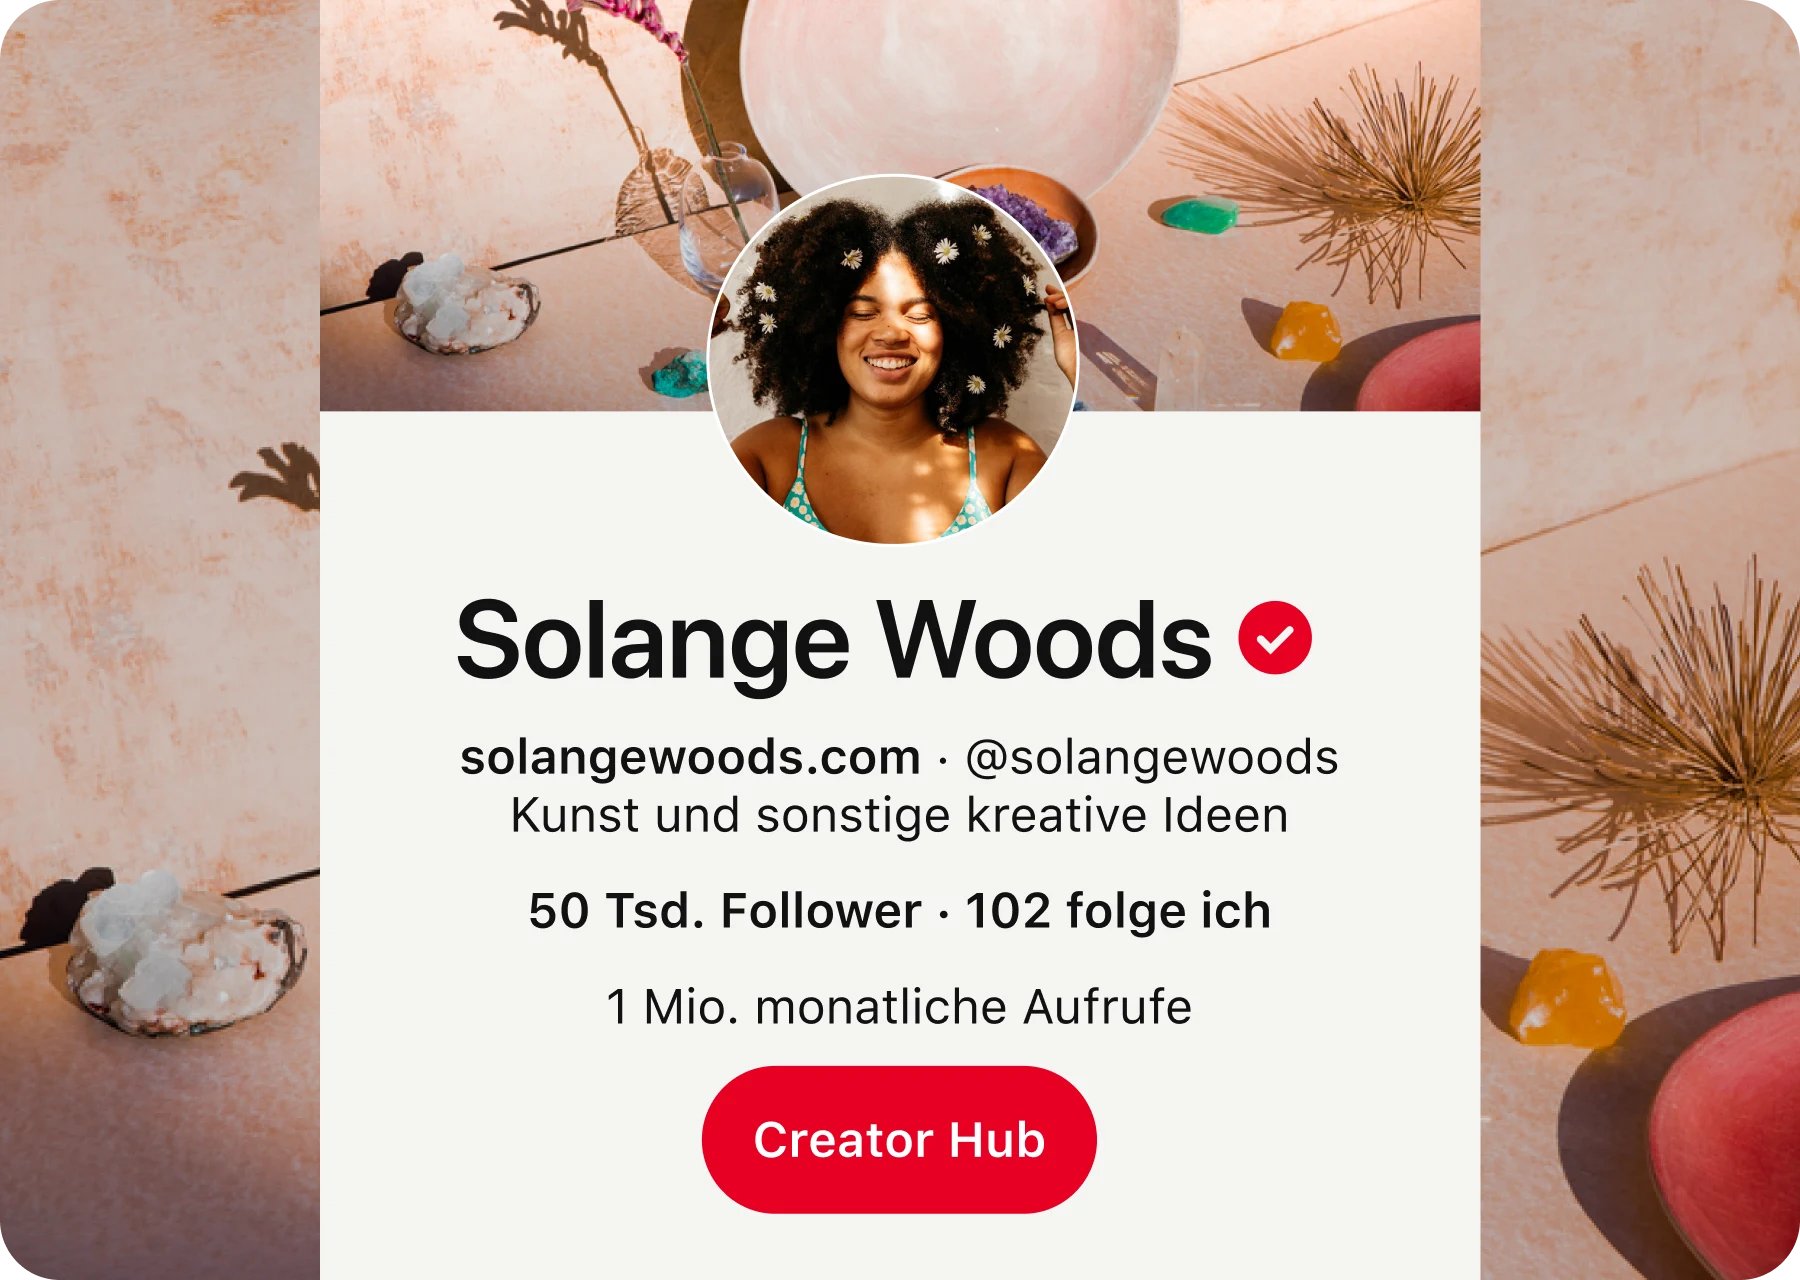 Pinterest-Profilseite von Solange Woods